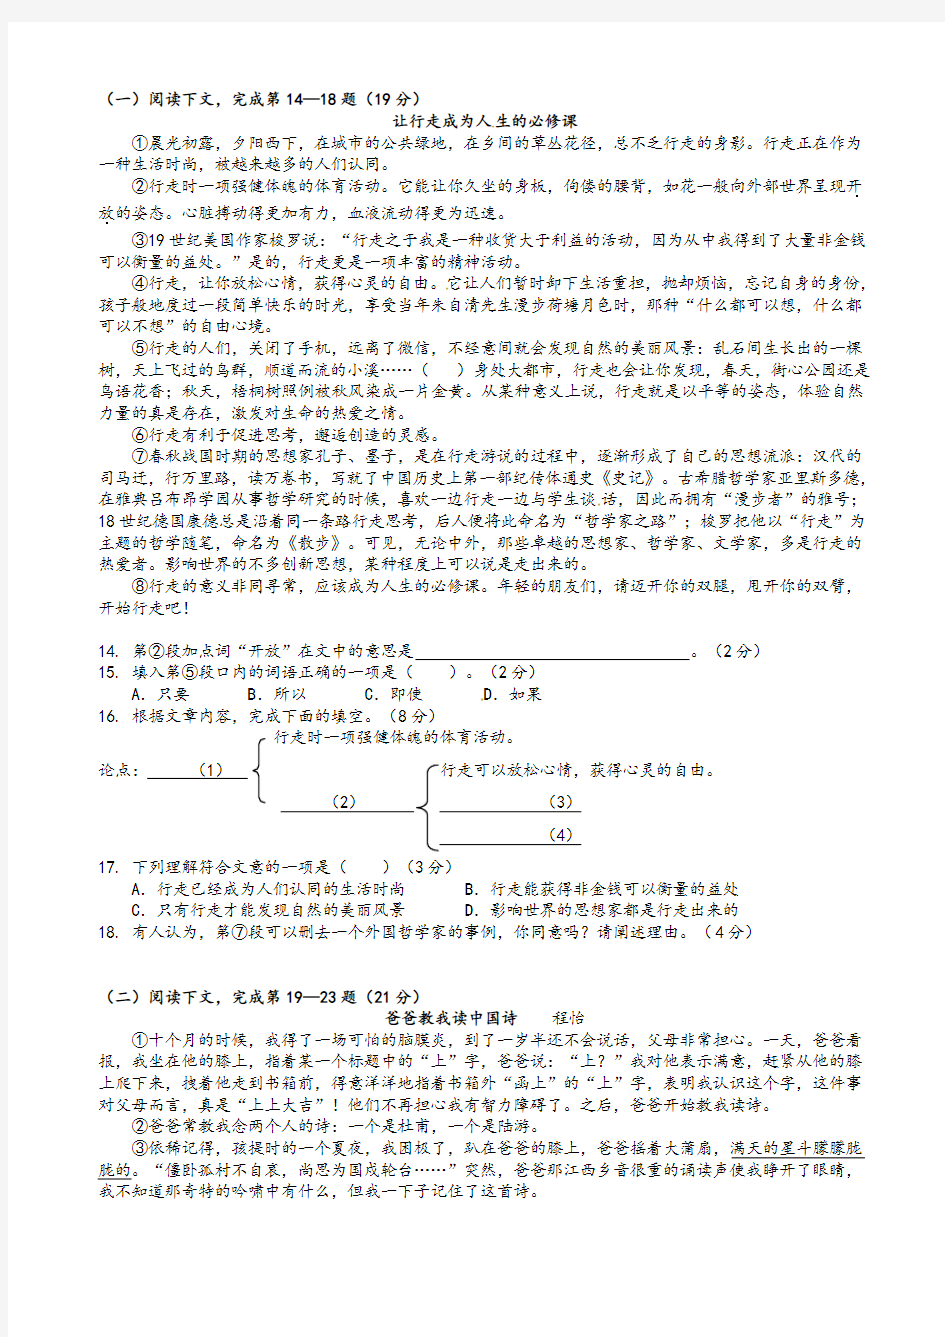 2021年上海市中考语文模拟试卷(有答案)